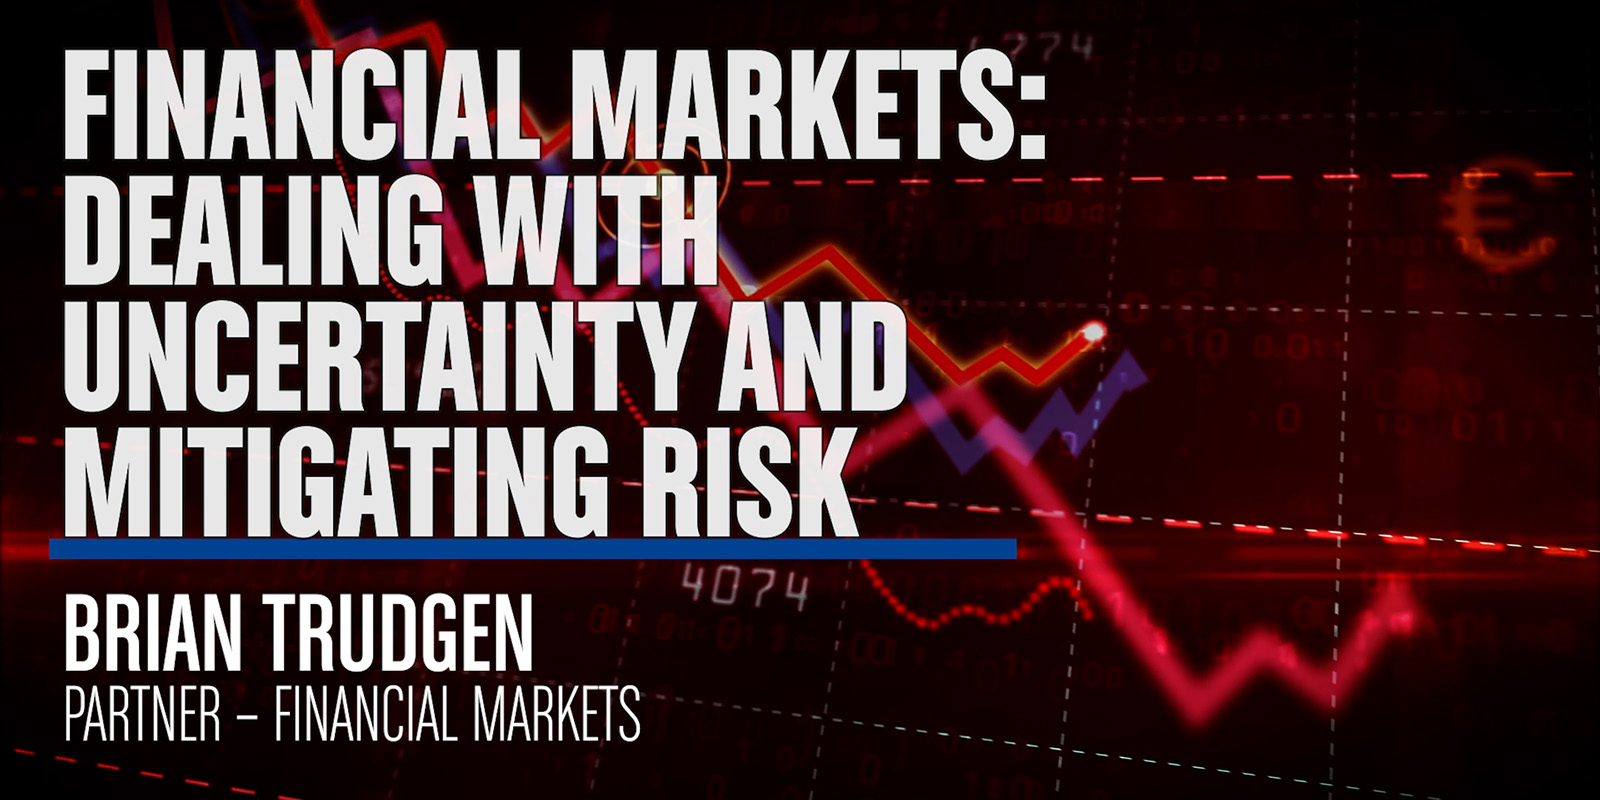 Trudgen_Financial Markets_Dealing with Uncertaint